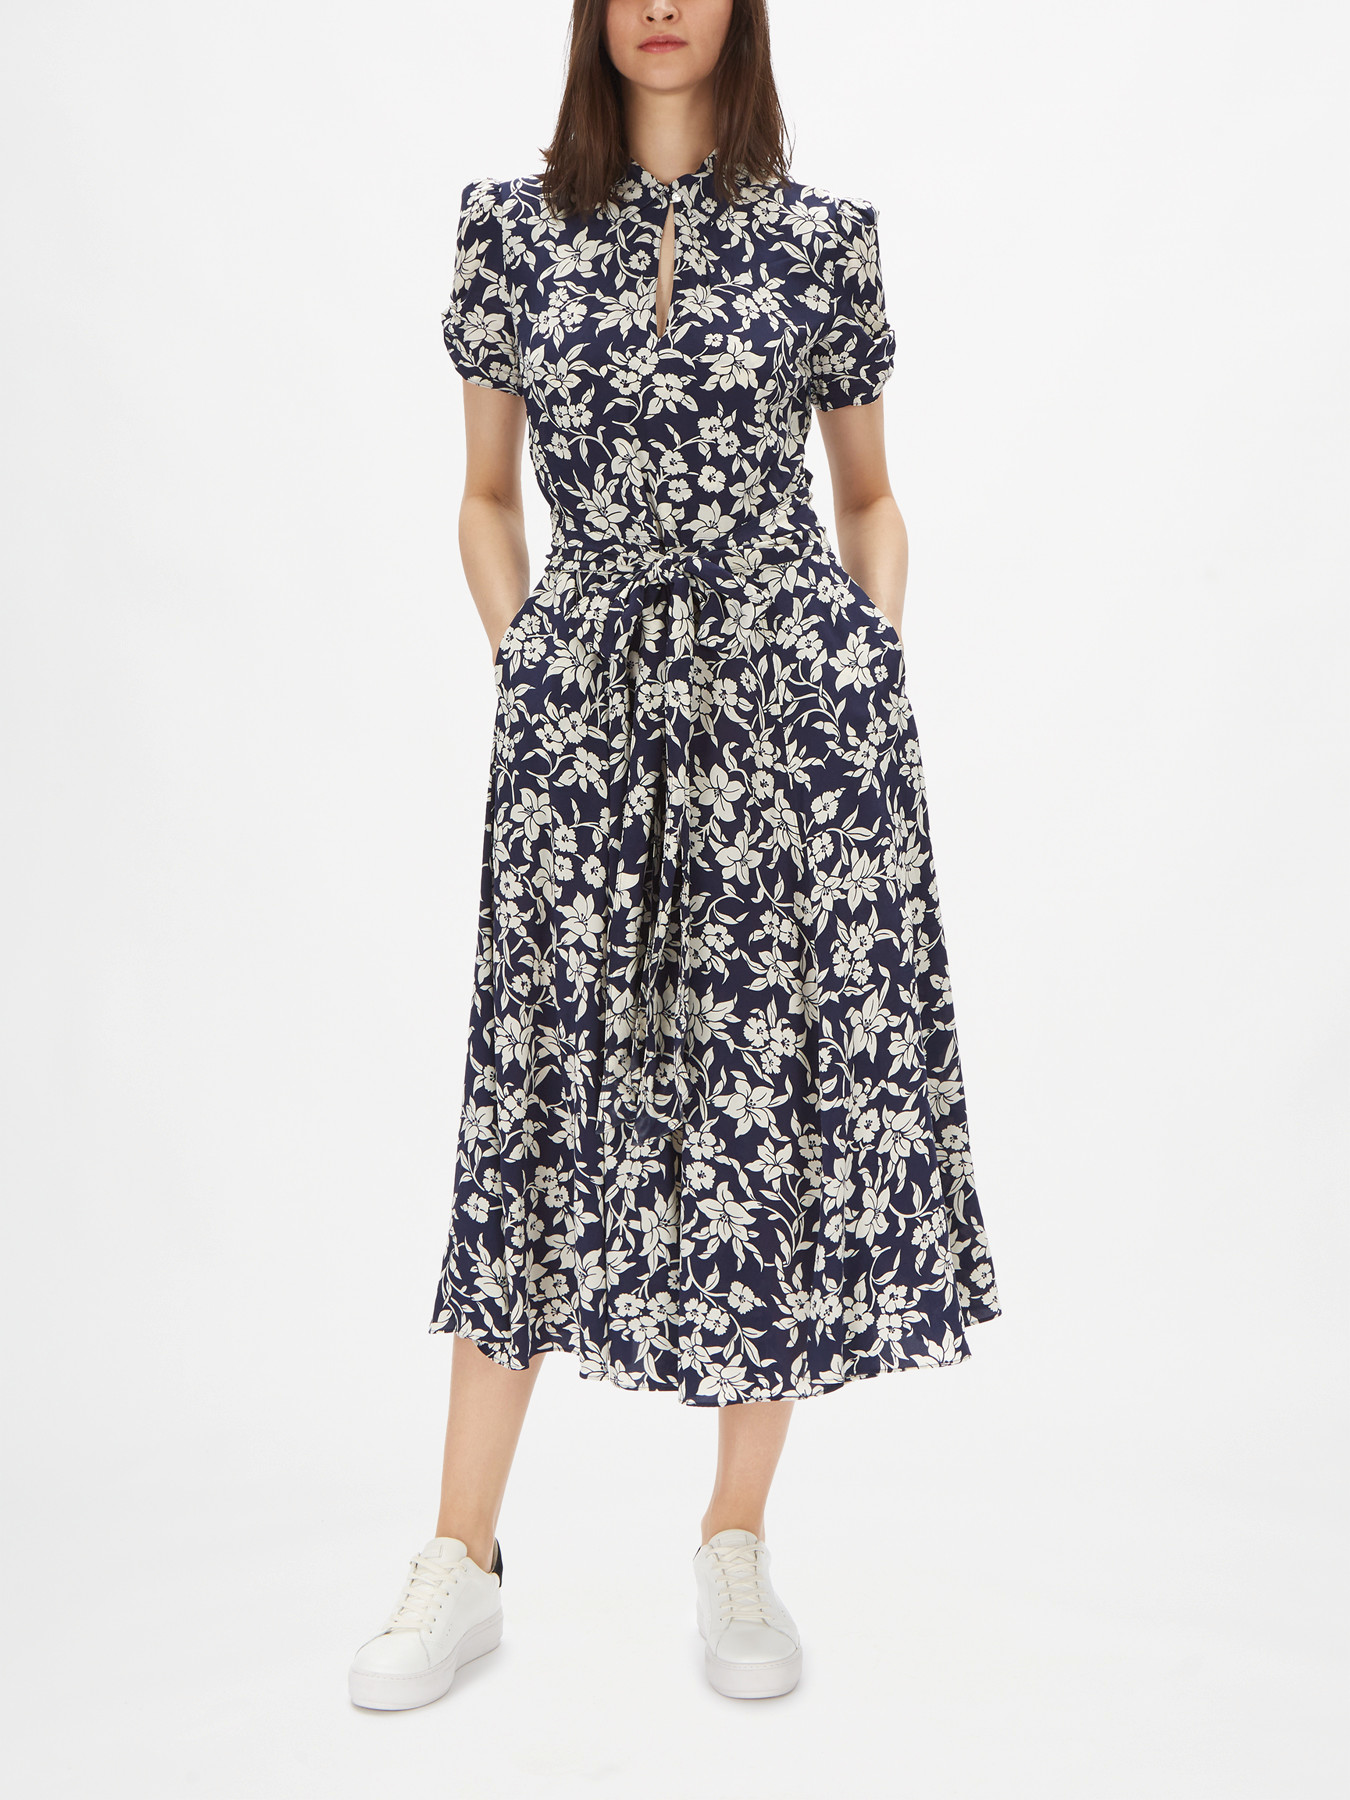 Polo Ralph Lauren Floral Dress | Fenwick